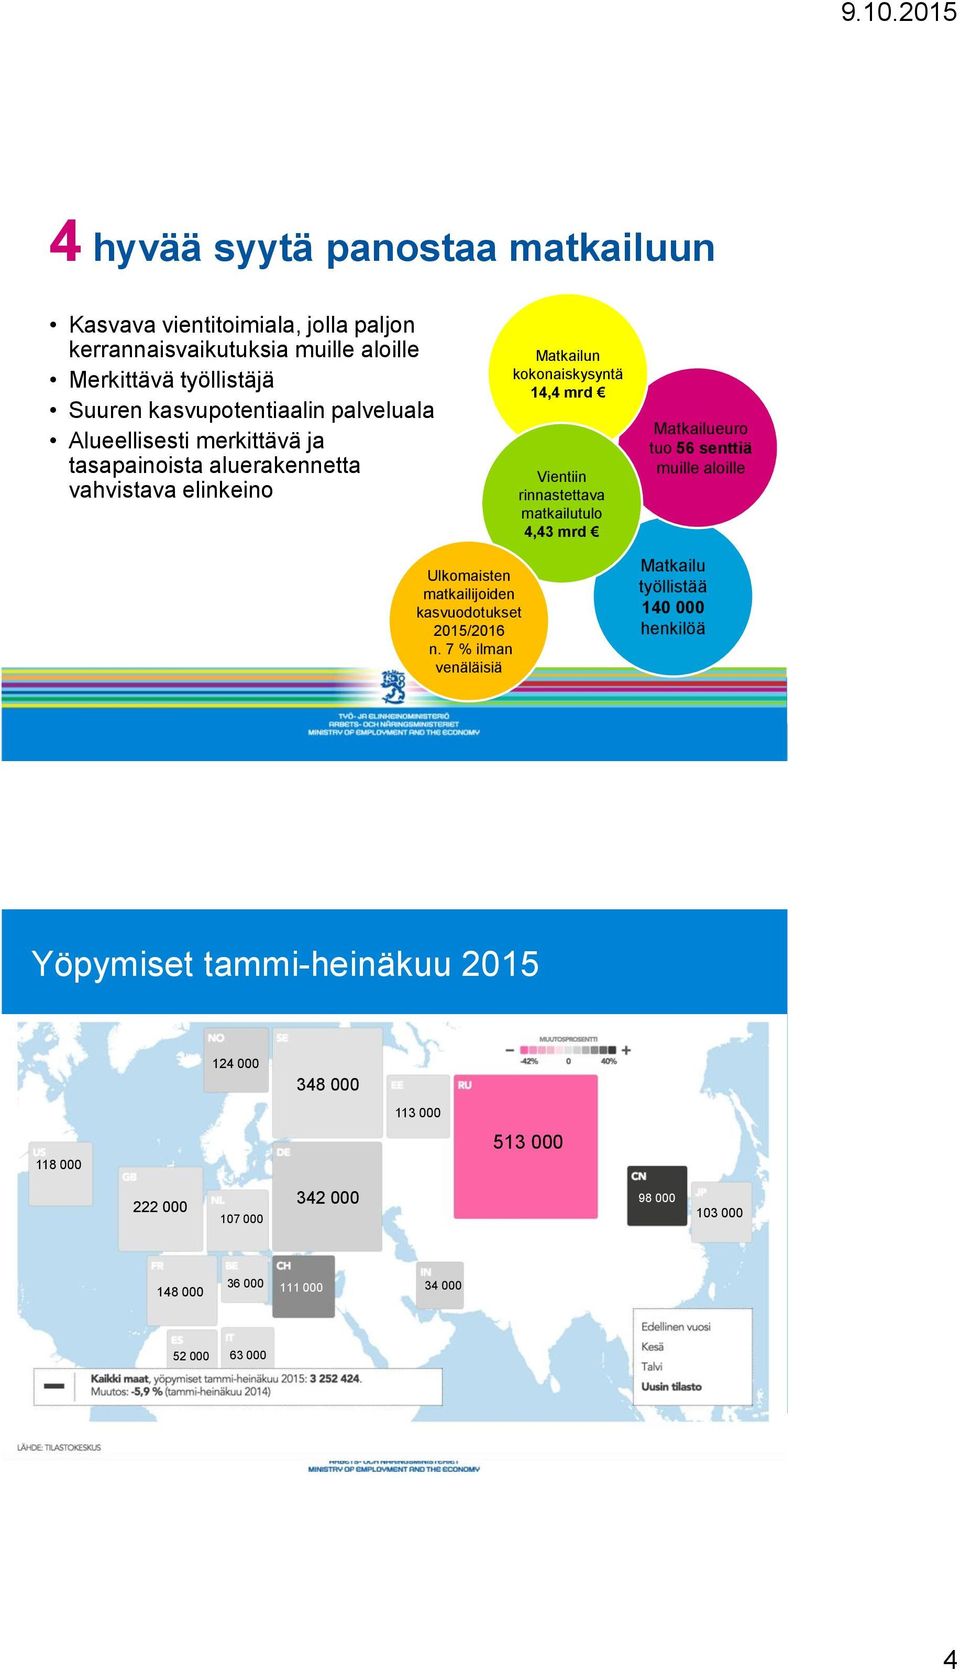 matkailutulo 4,43 mrd Matkailueuro tuo 56 senttiä muille aloille Ulkomaisten matkailijoiden kasvuodotukset 2015/2016 n.